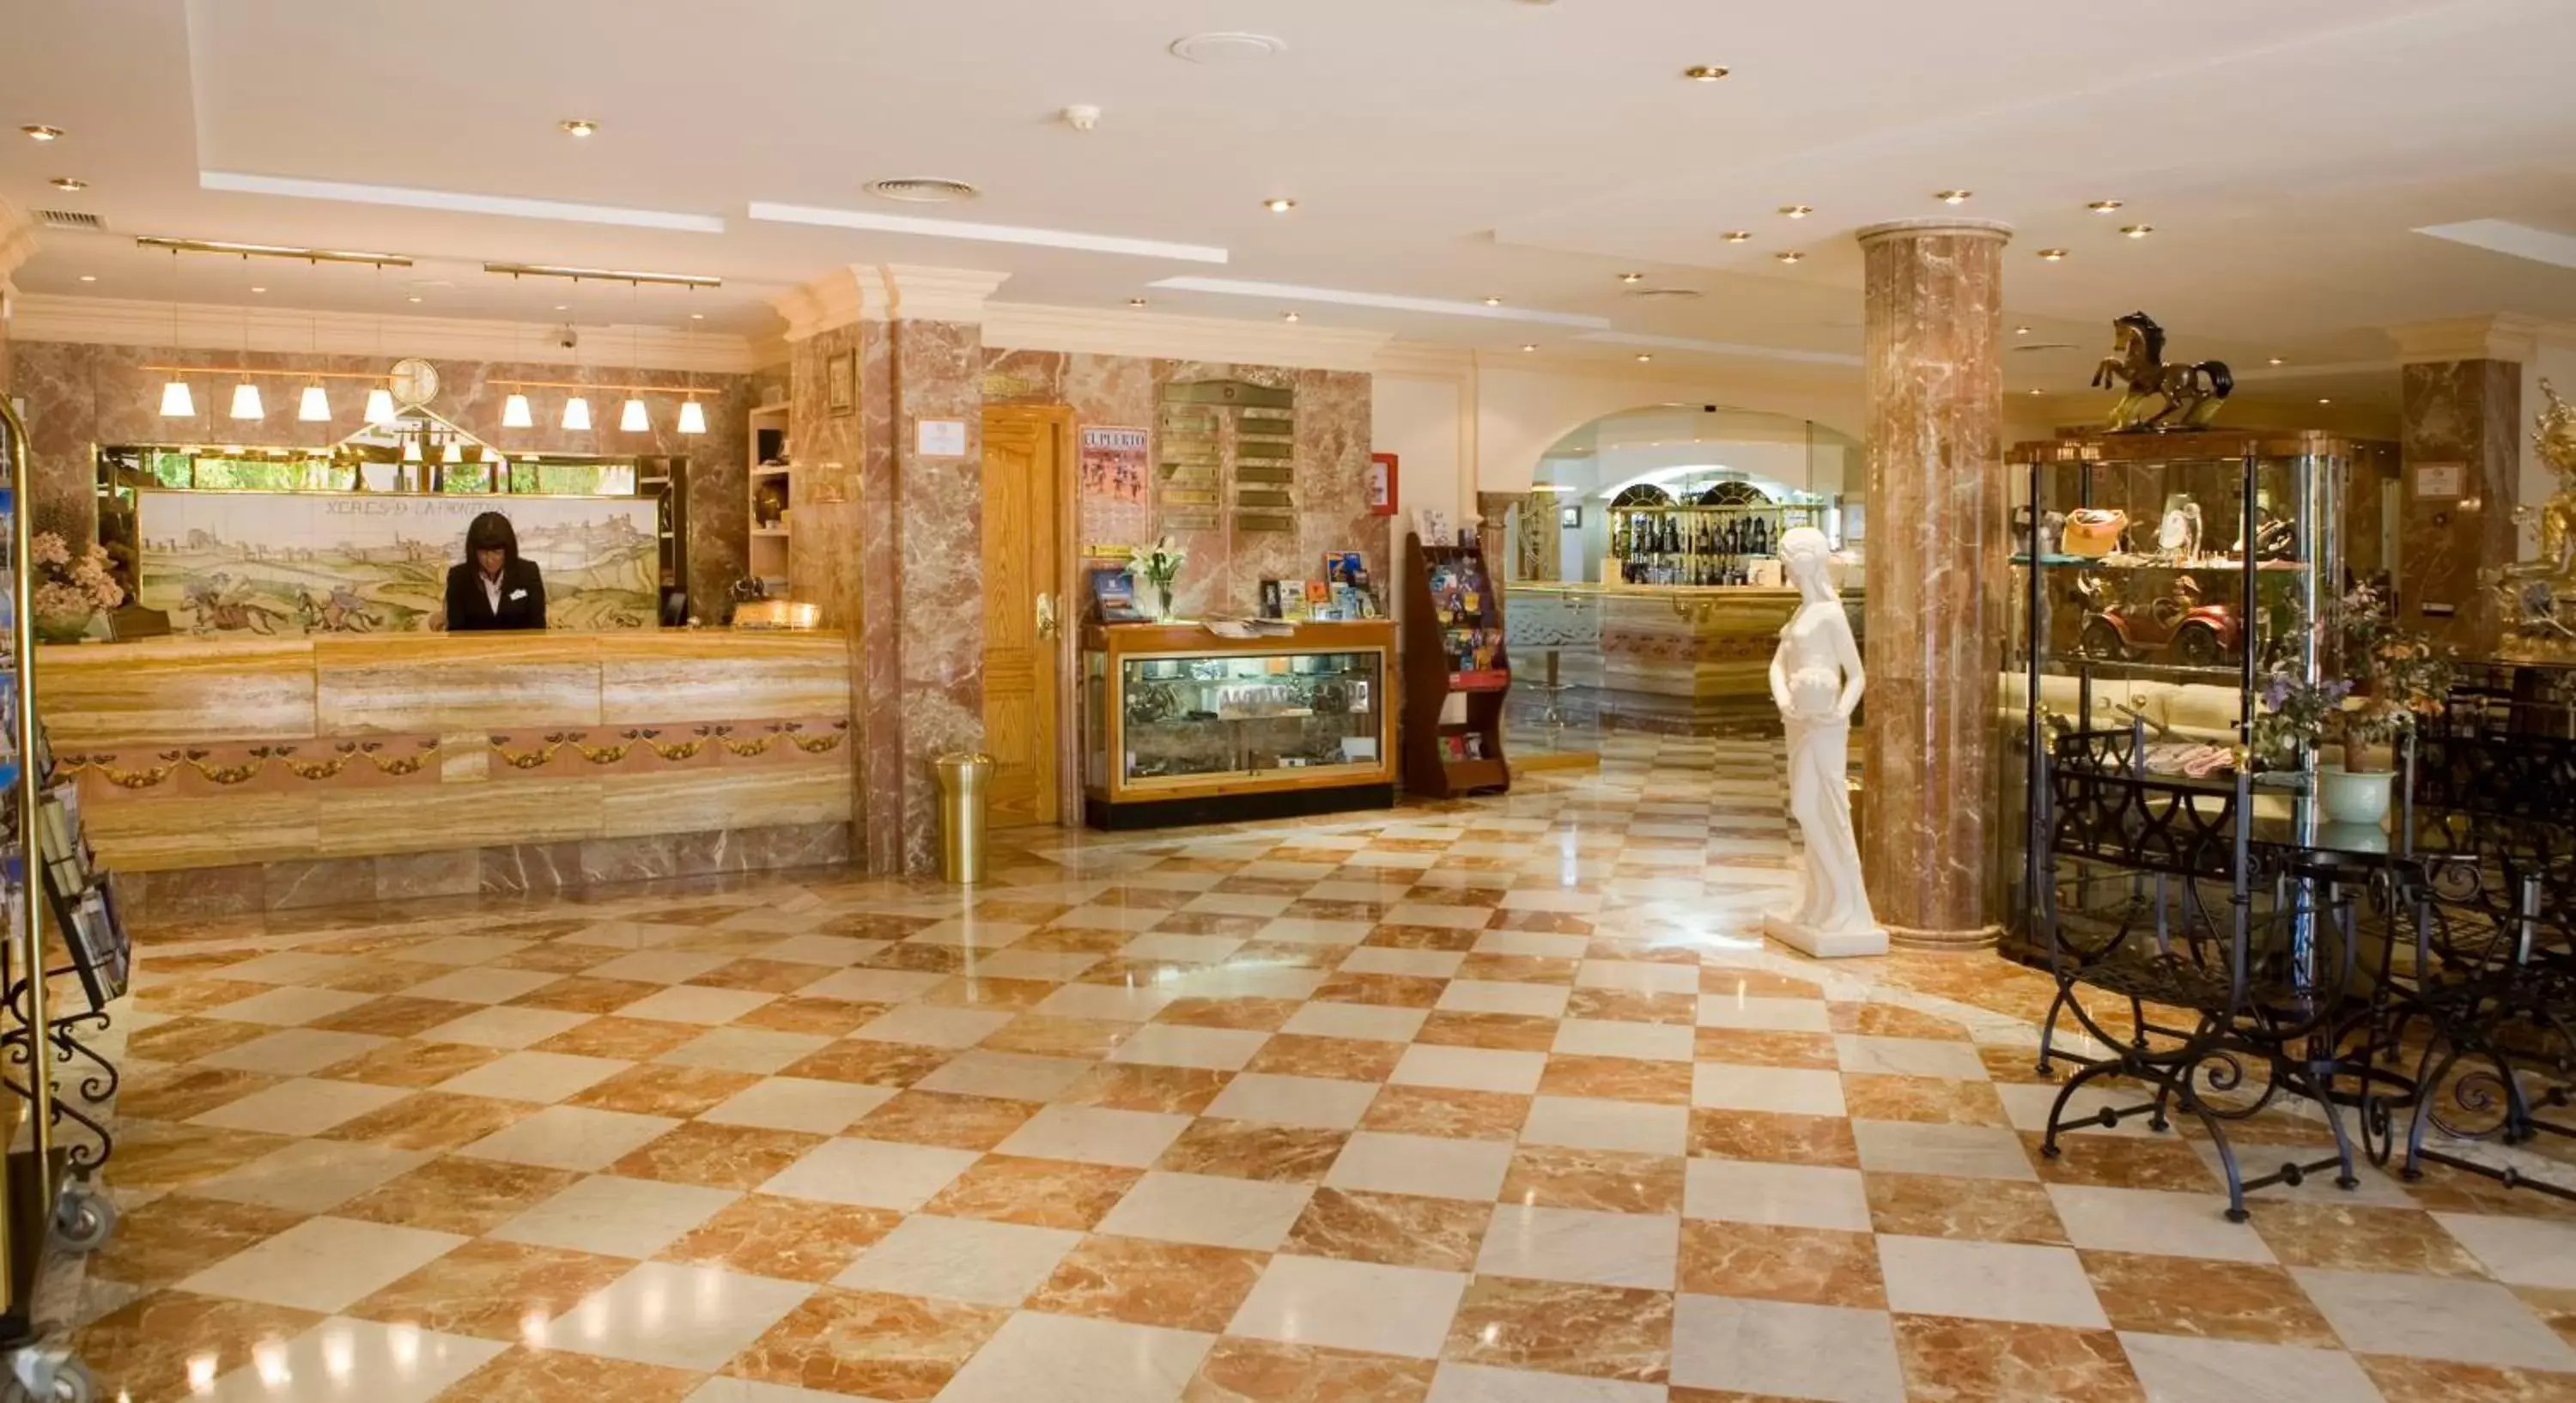 Lobby or reception in La Cueva Park